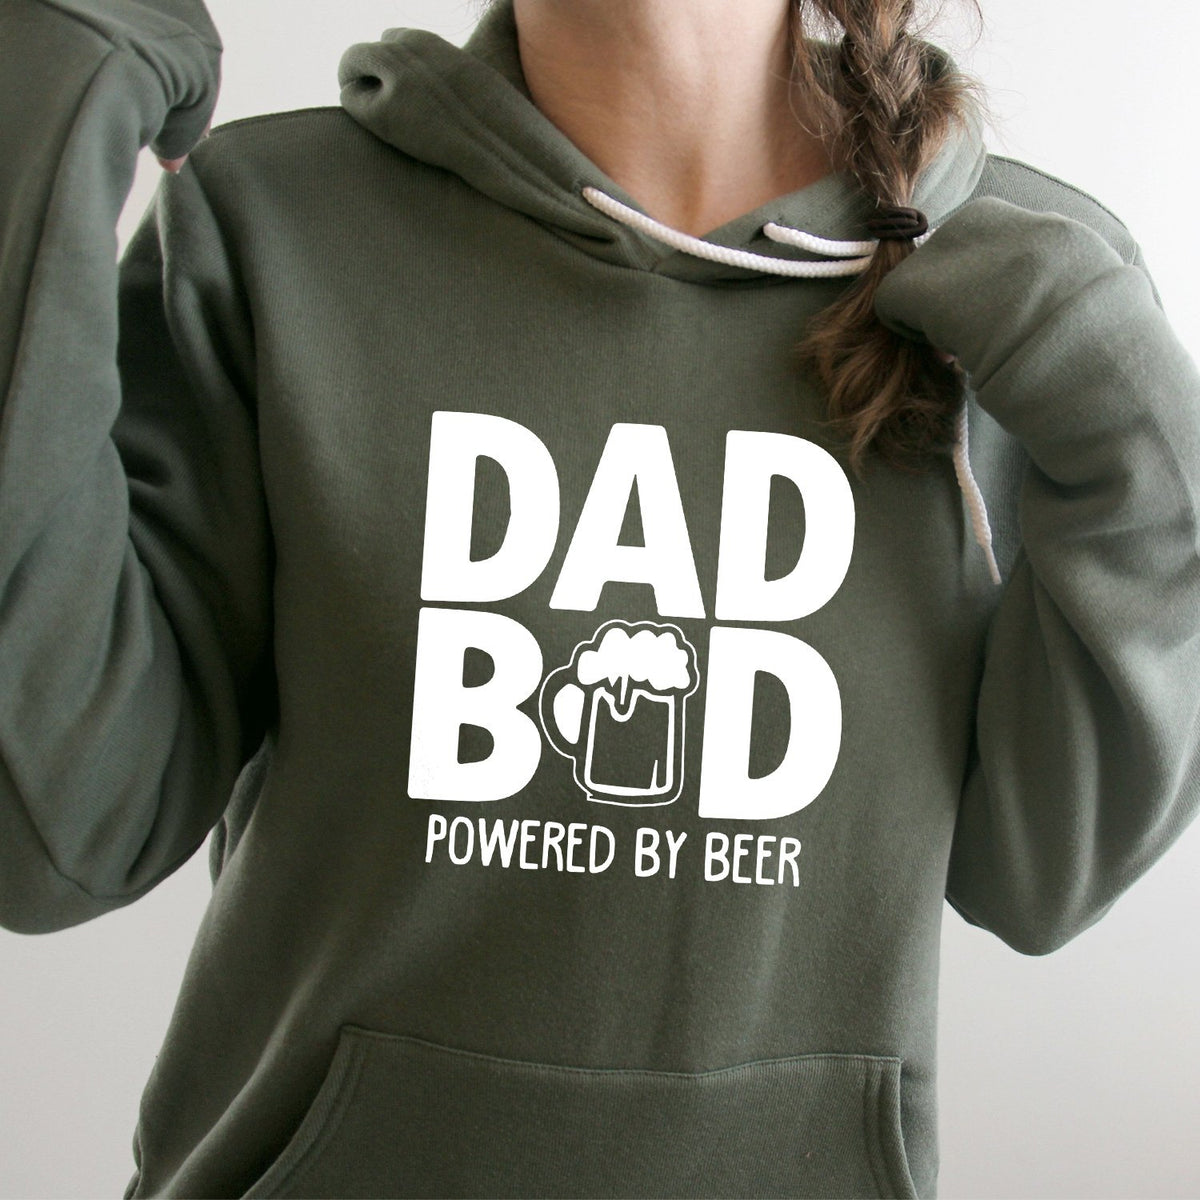 Dad Bod Powered By Beer - Hoodie Sweatshirt